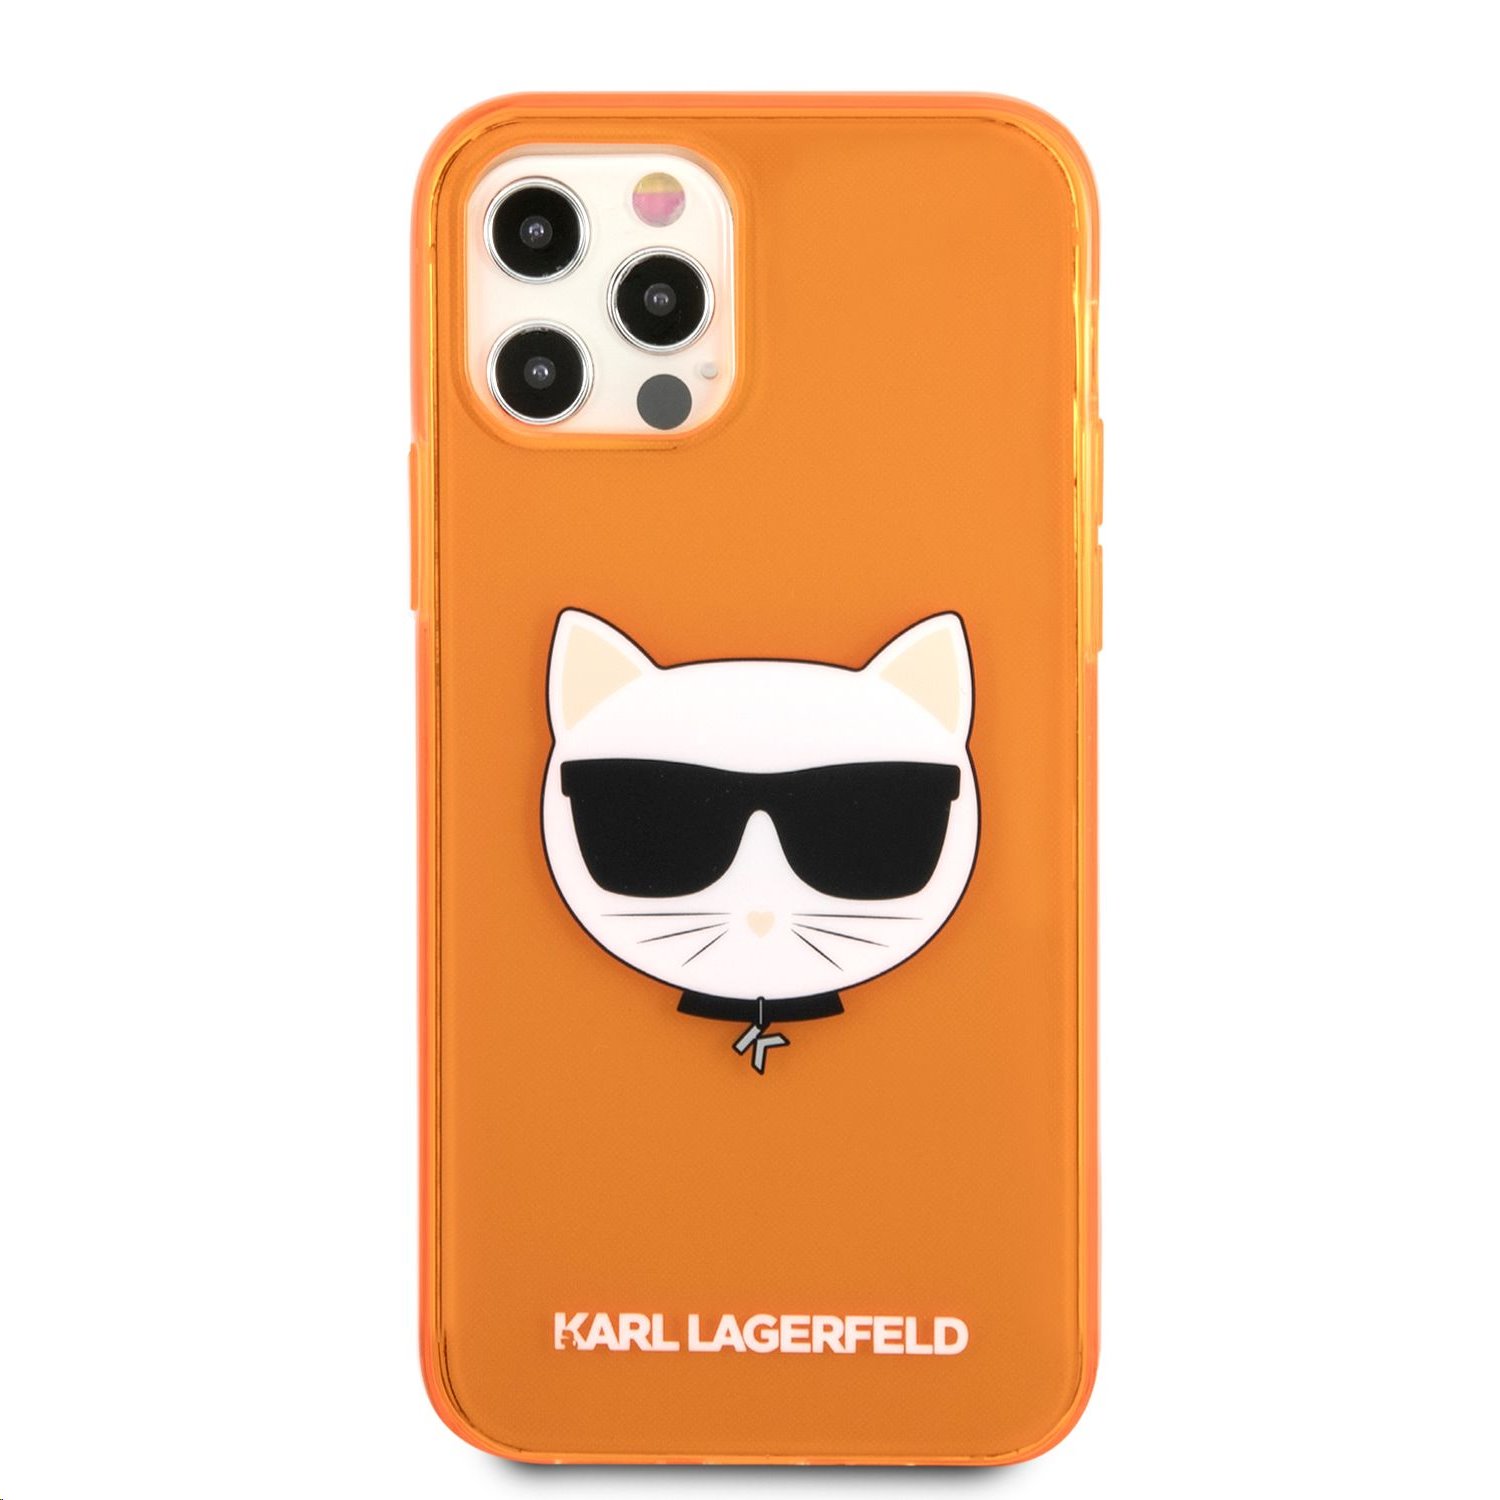 SIlikonové pouzdro Karl Lagerfeld TPU Choupette Head KLHCP13LCHTRO pro Apple iPhone 13 Pro, oranžová